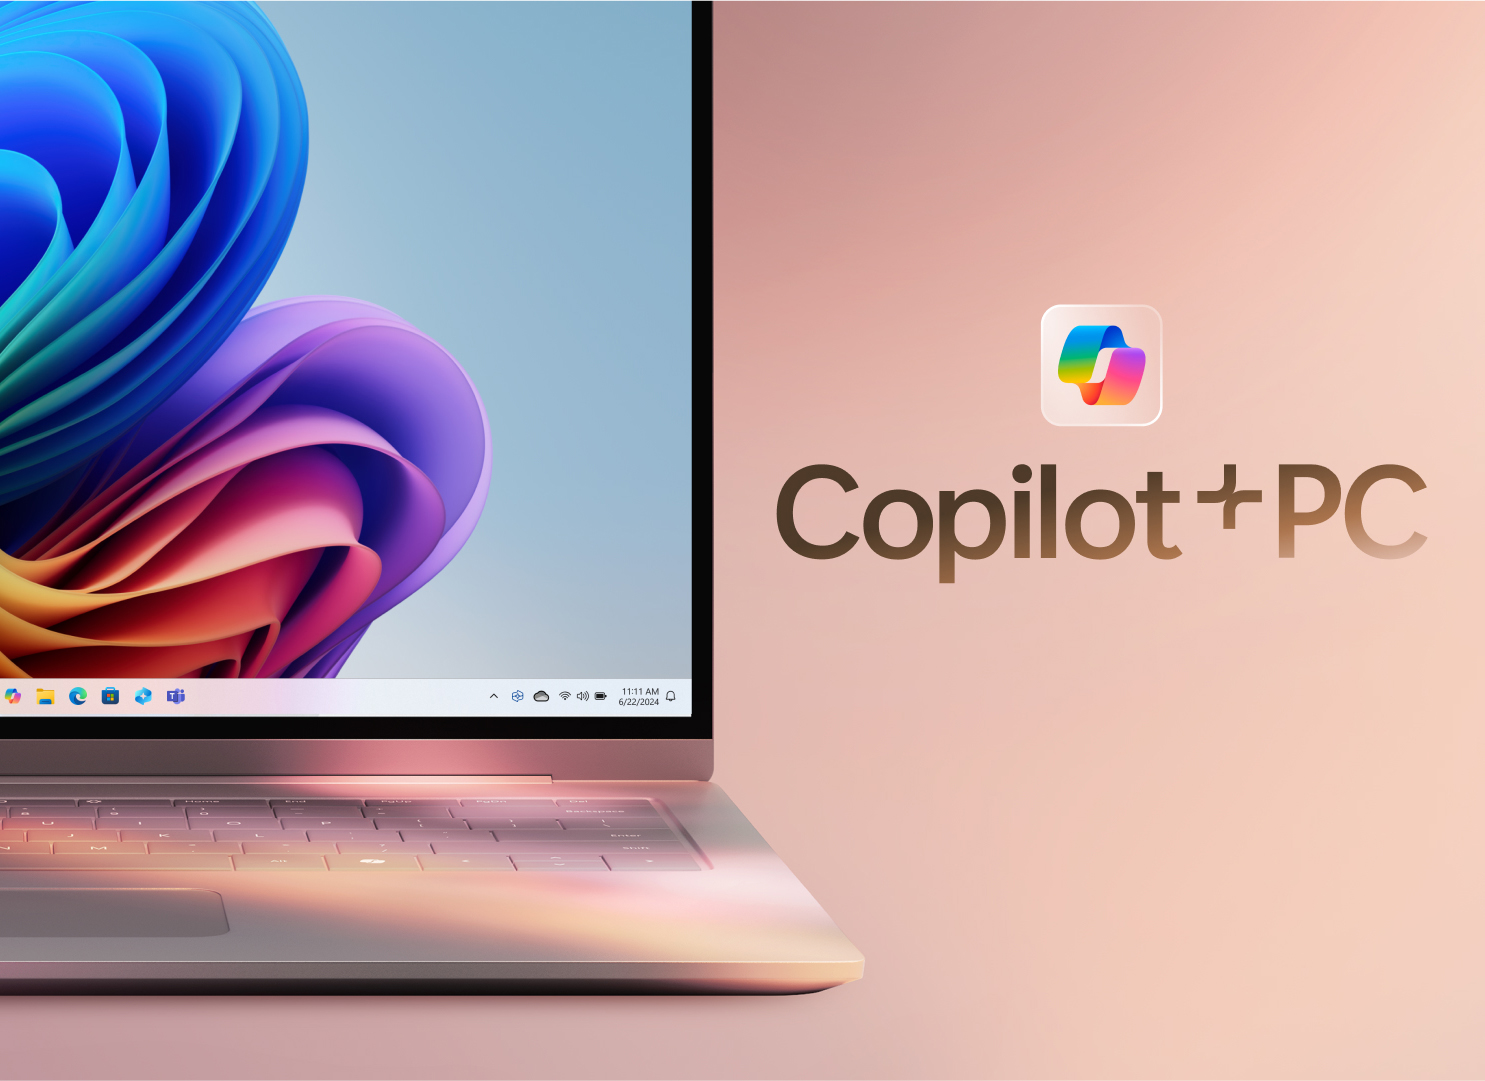 Как использовать новые возможности на компьютере Copilot+ PC?